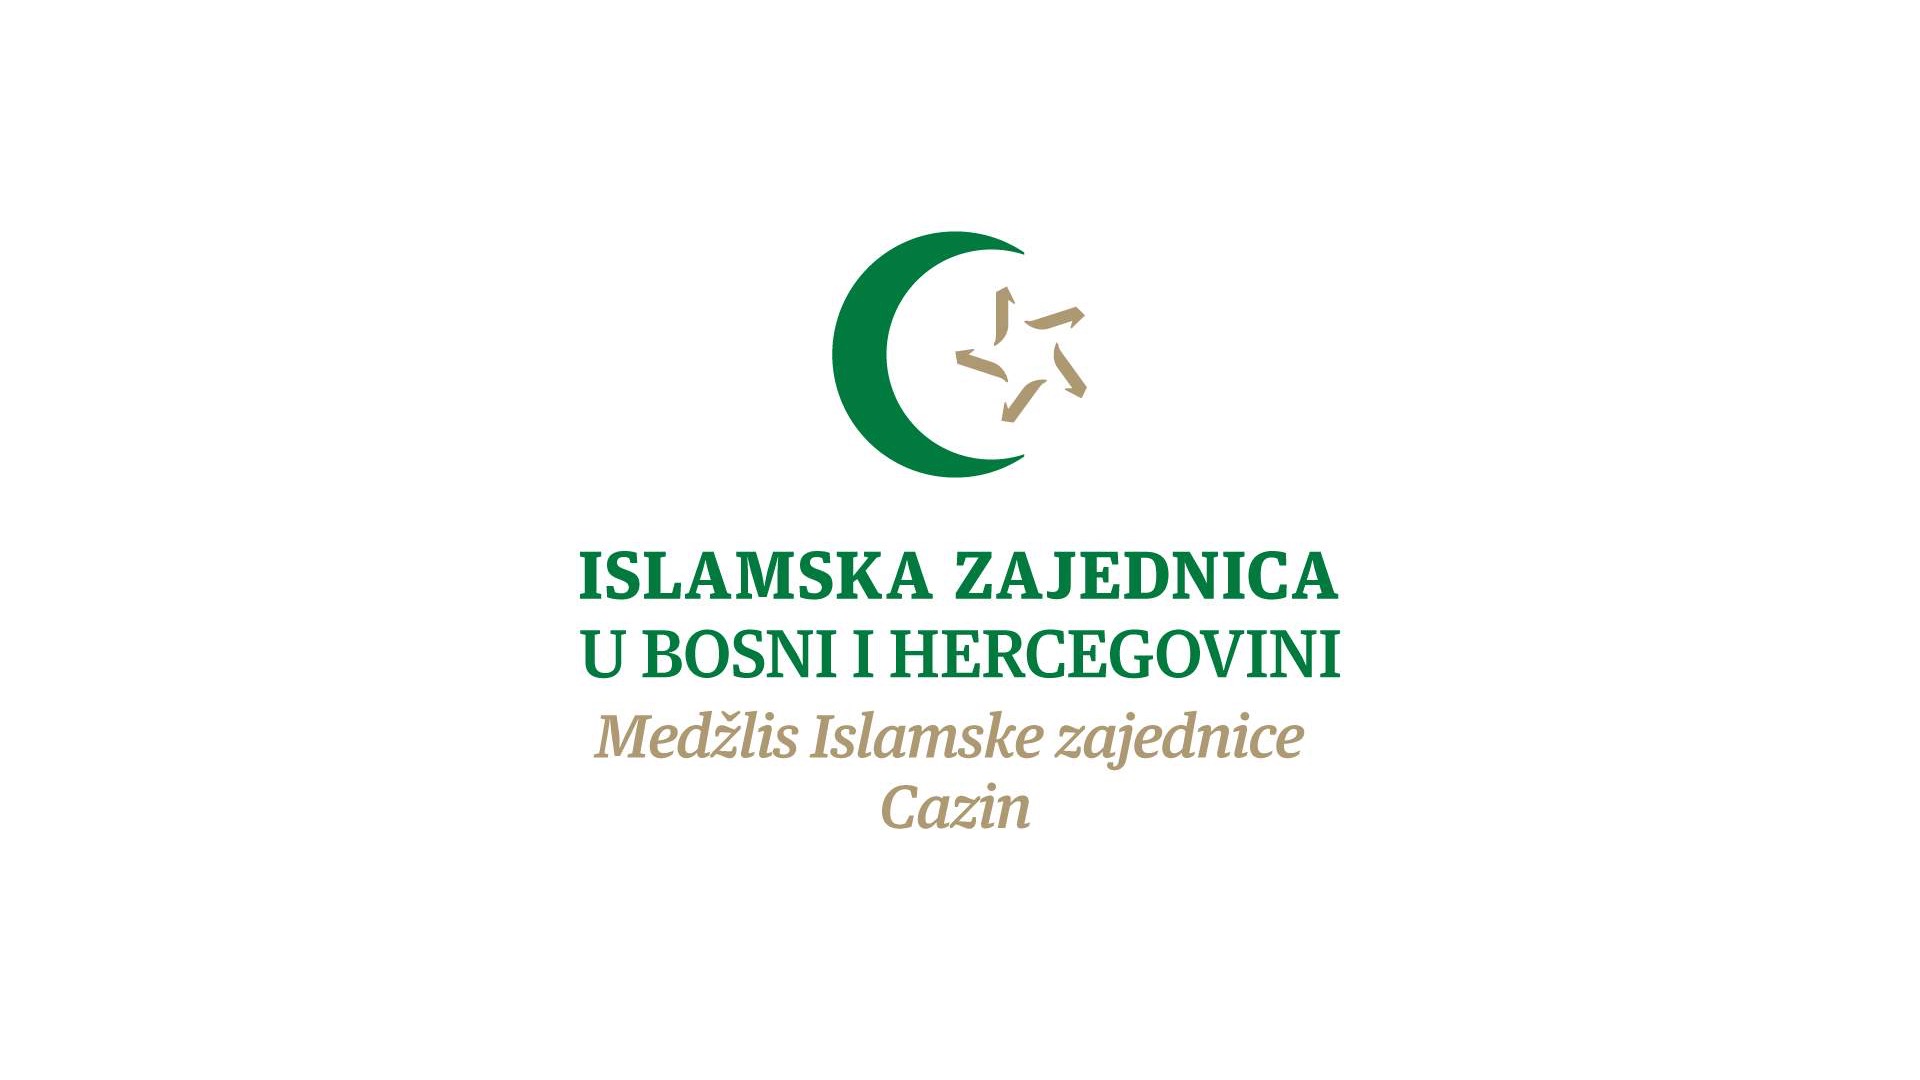 MIZ Cazin: Konkurs za popunu radnog mjesta muallime u džematu Medresa